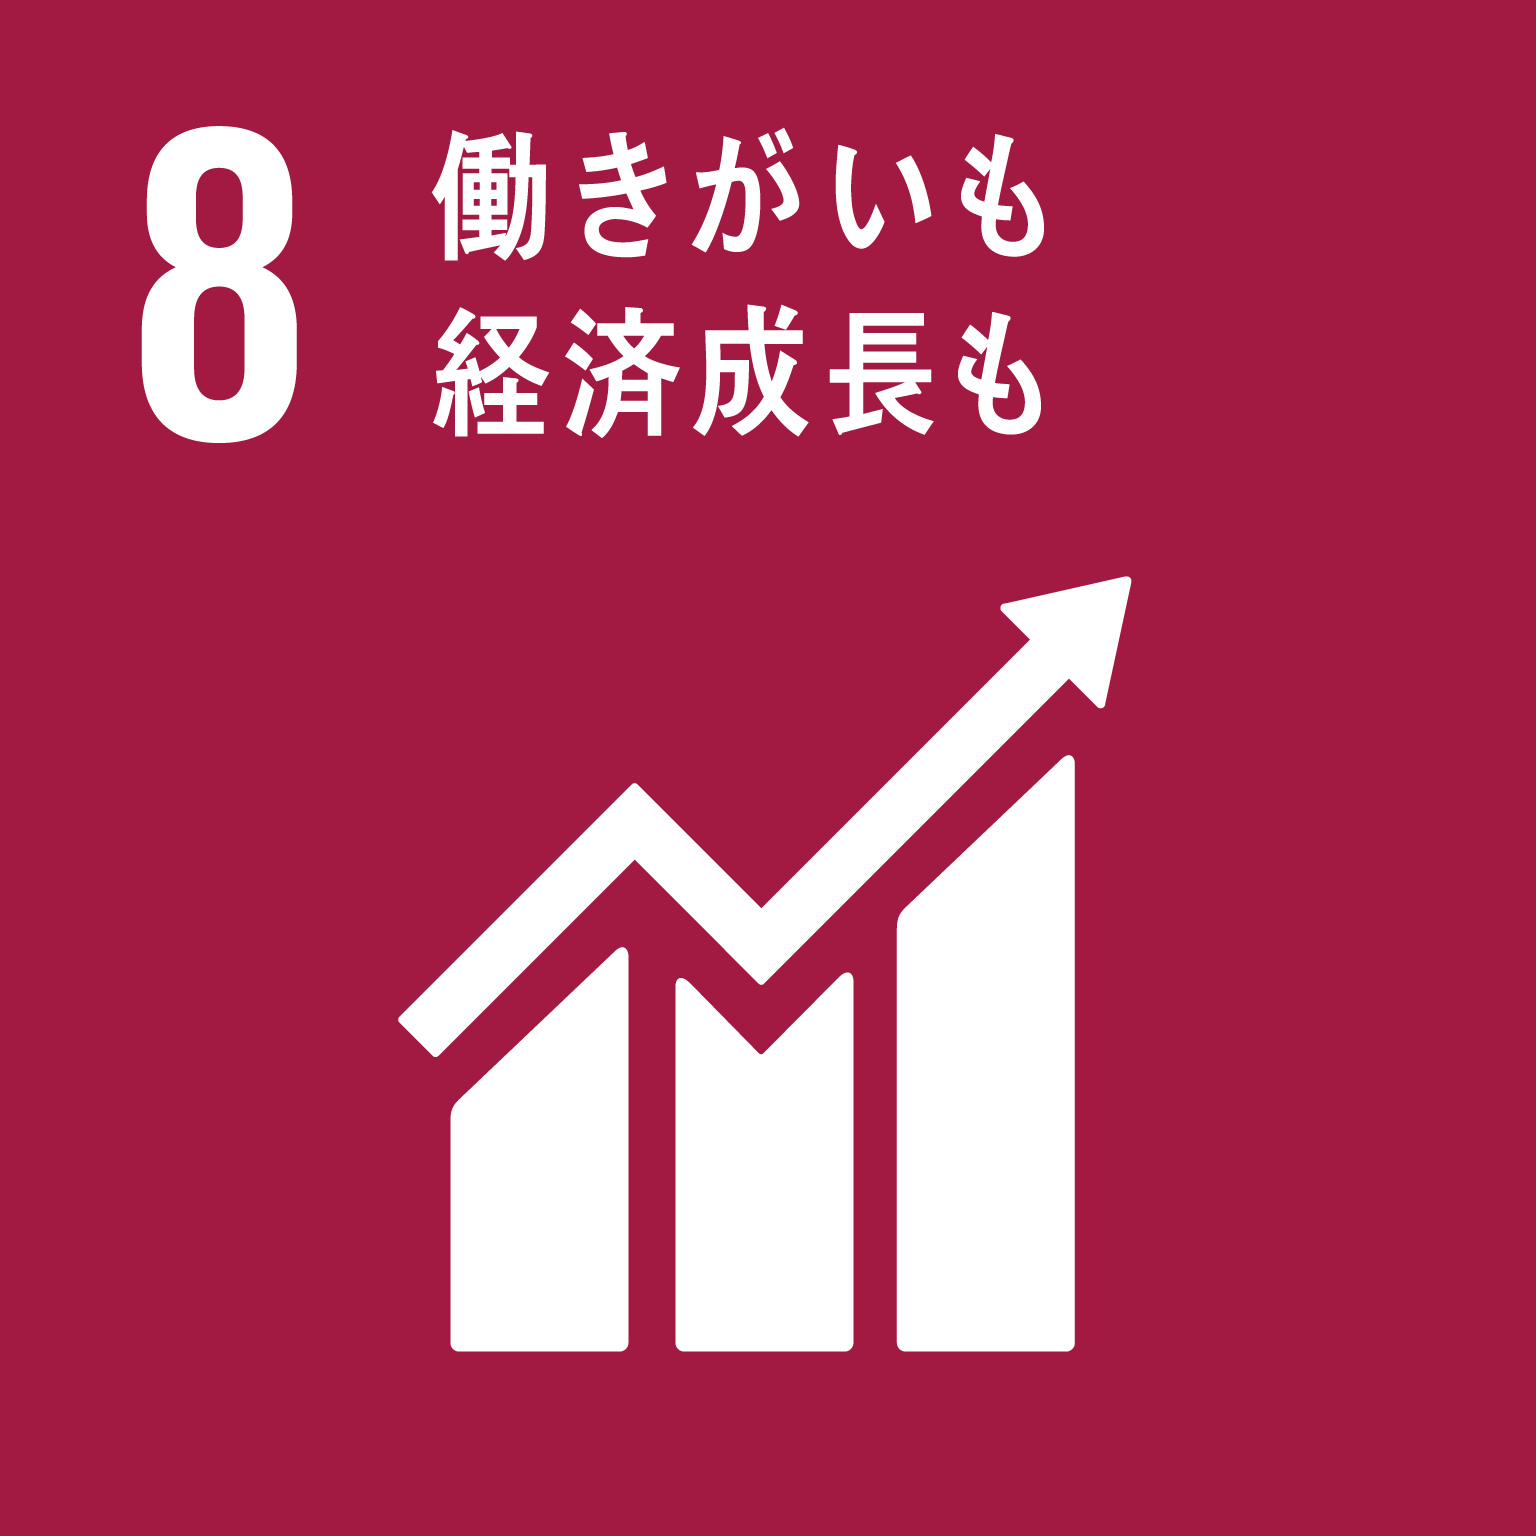 目標8働きがいも経済成長ものロゴ